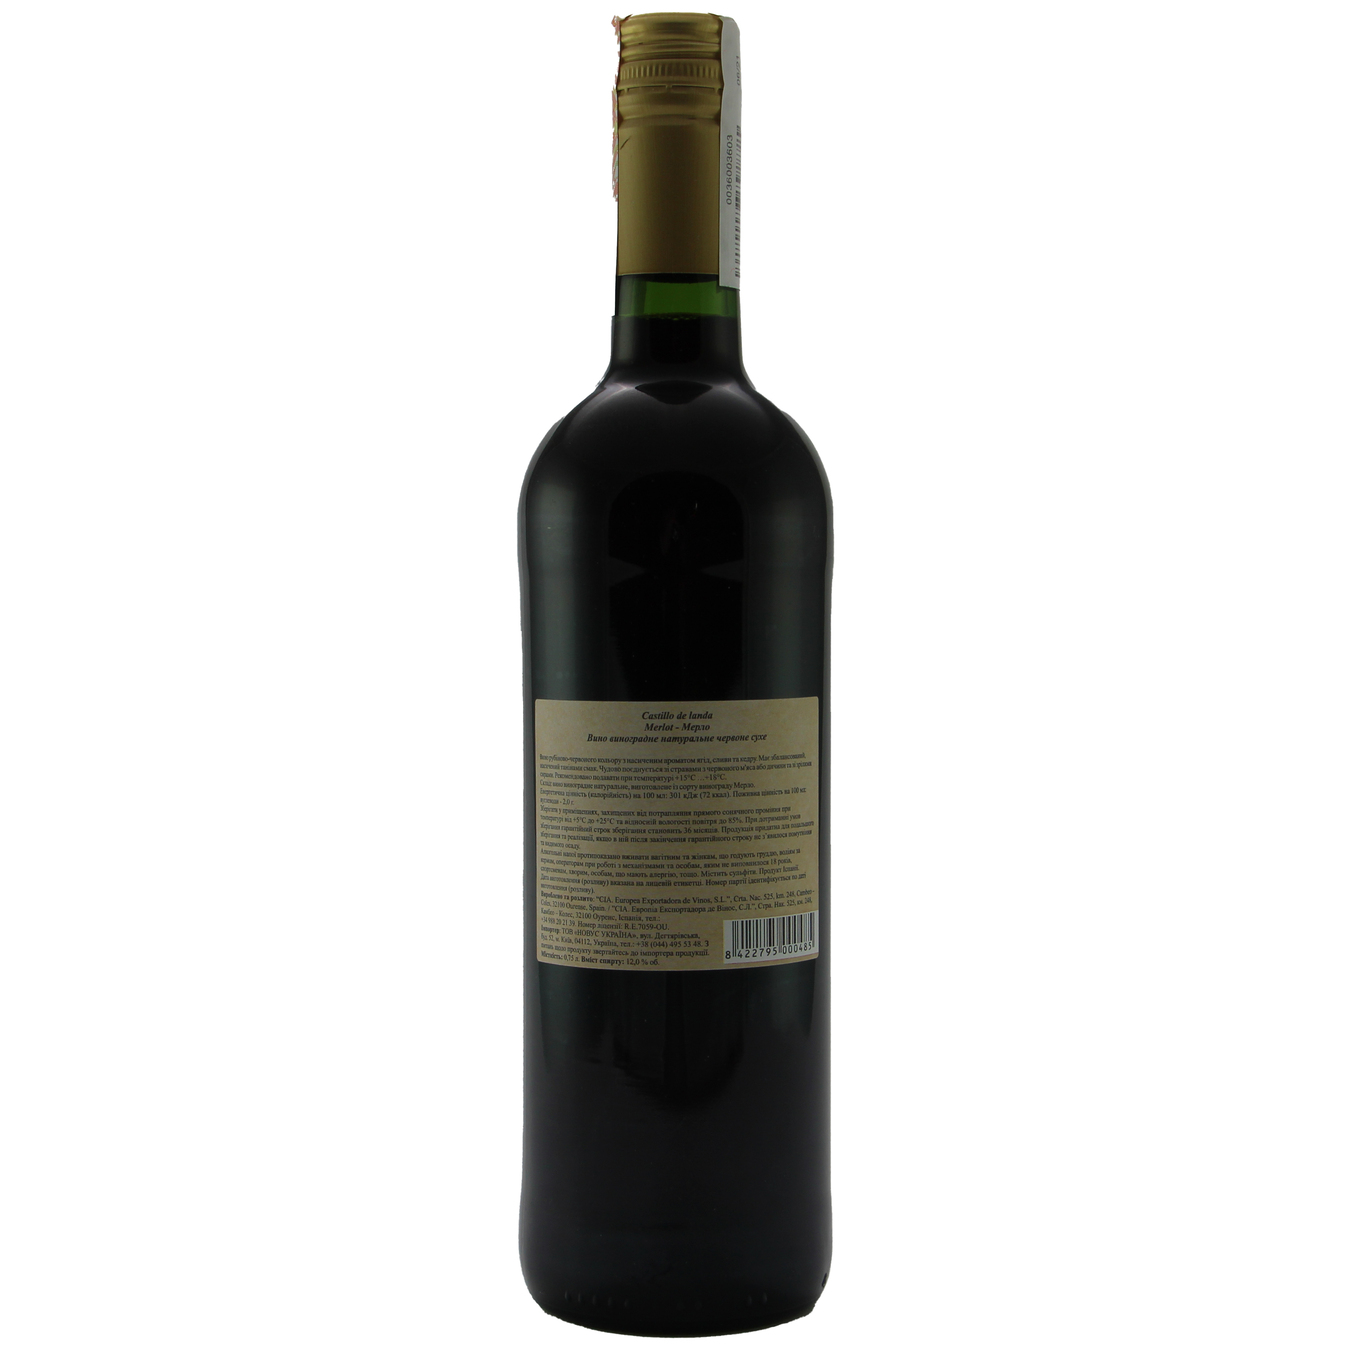 Castillo de landa Merlot red dry wine 12% 0,75l 2